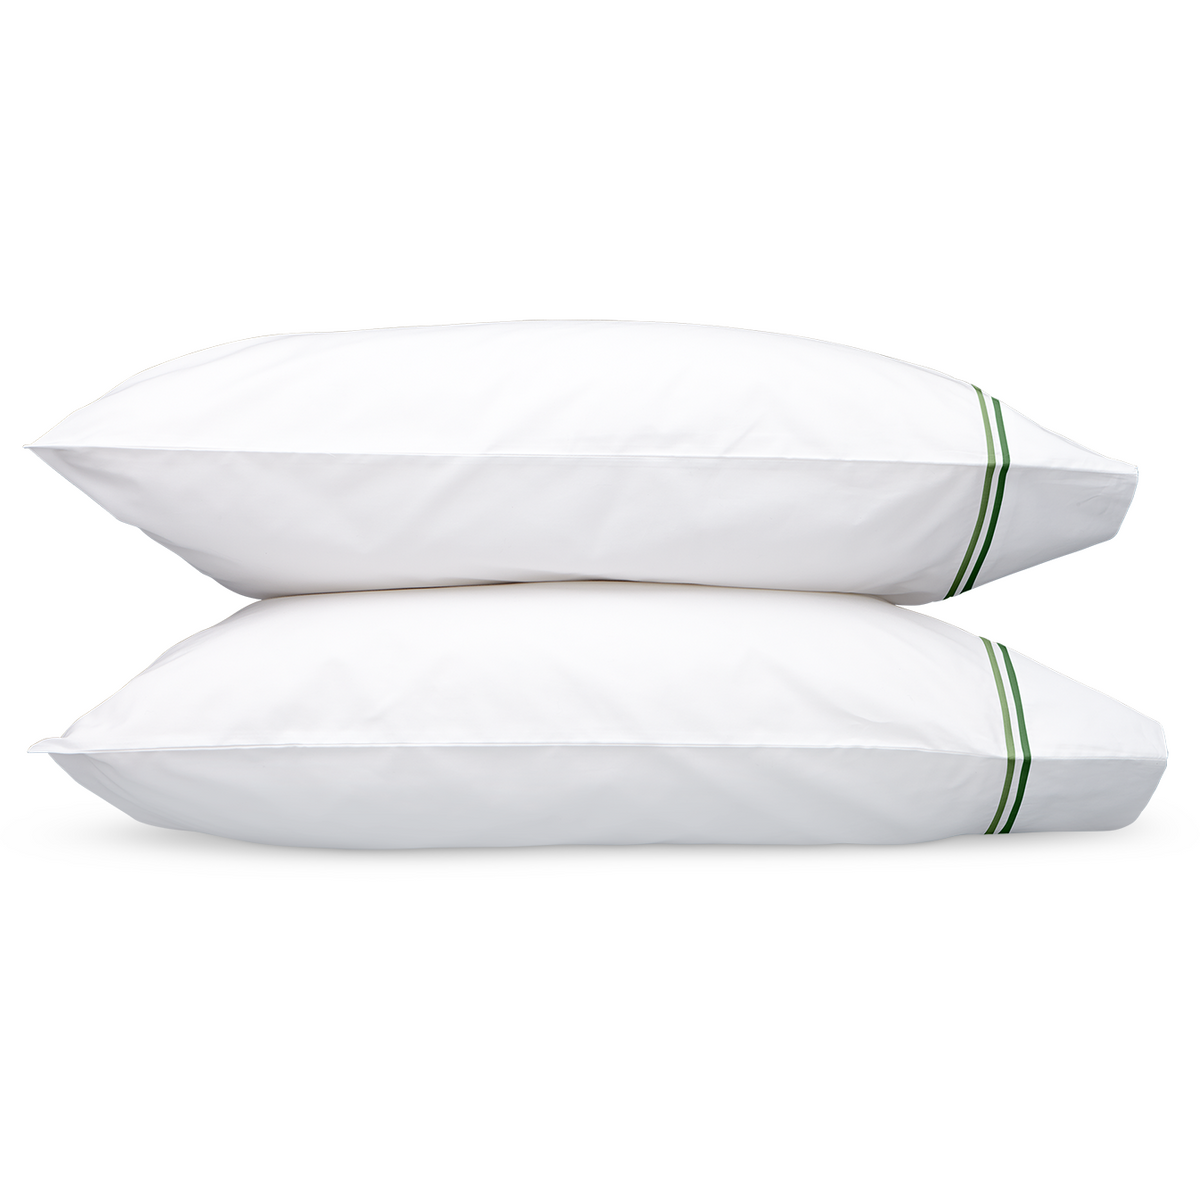 Matouk Essex Sheet Set Pillowcases Green Fine Linens